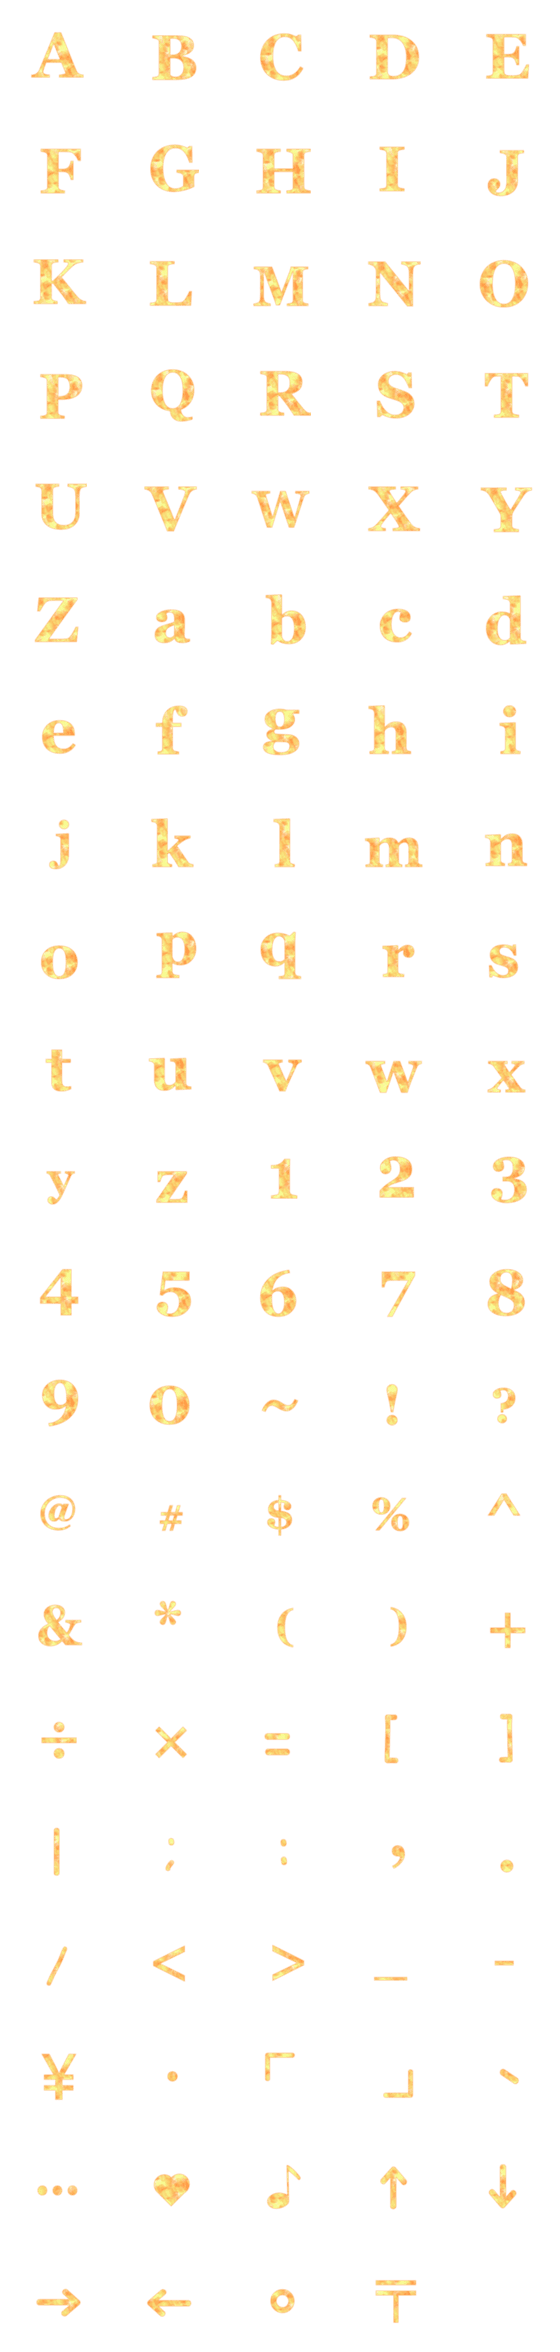 [LINE絵文字]orange series of the alphabetの画像一覧